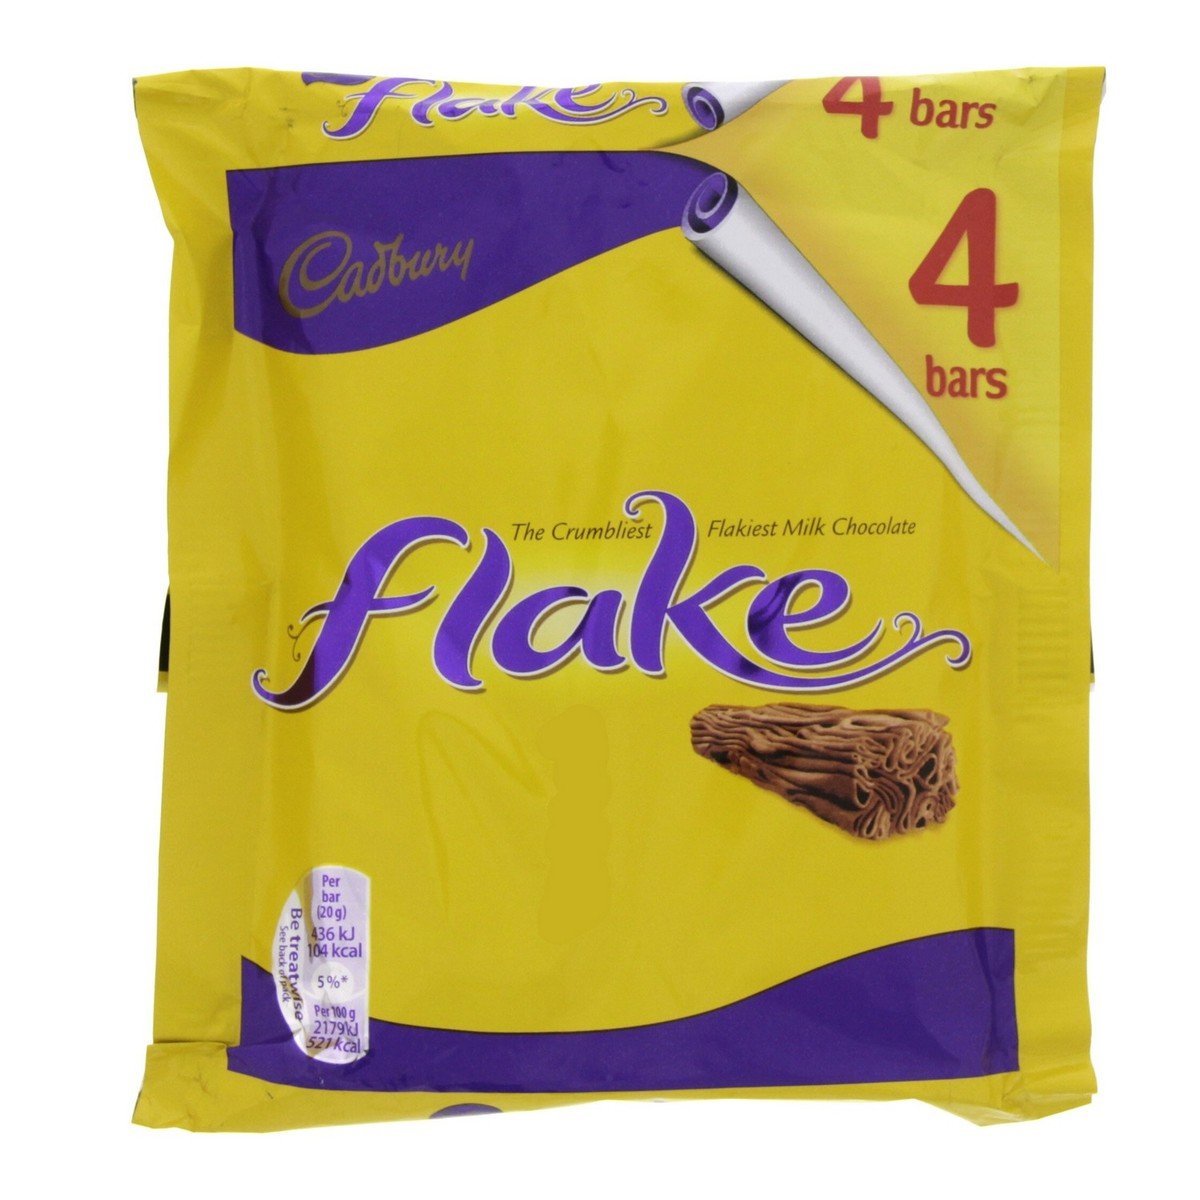 Cadbury Flake Chocolate Bar 32g (Pack of 24)